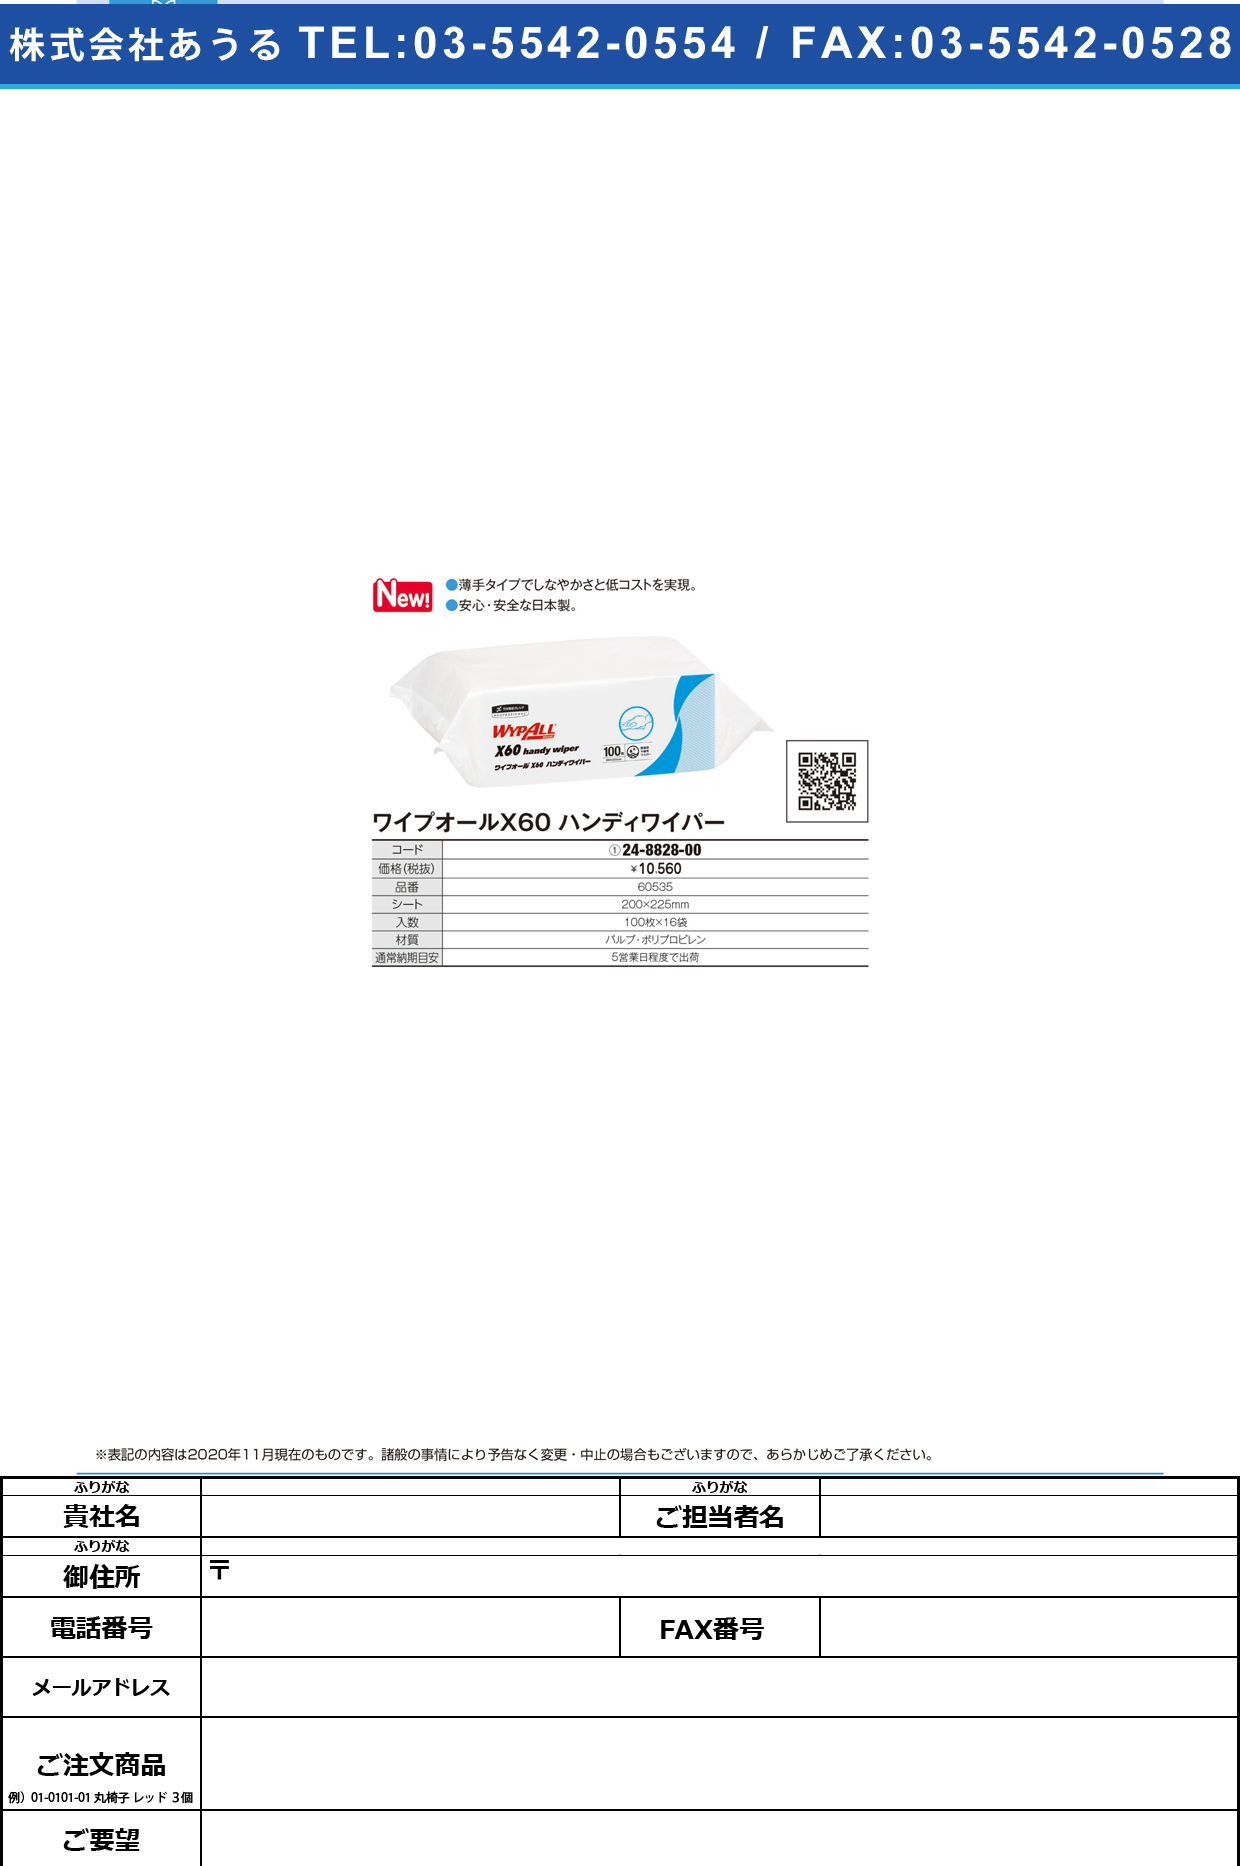 ワイプオールX60ハンディワイパー 60535(100マイX16パック)60535(100ﾏｲX16ﾊﾟｯｸ)(24-8828-00)【日本製紙クレシア】(販売単位:1)